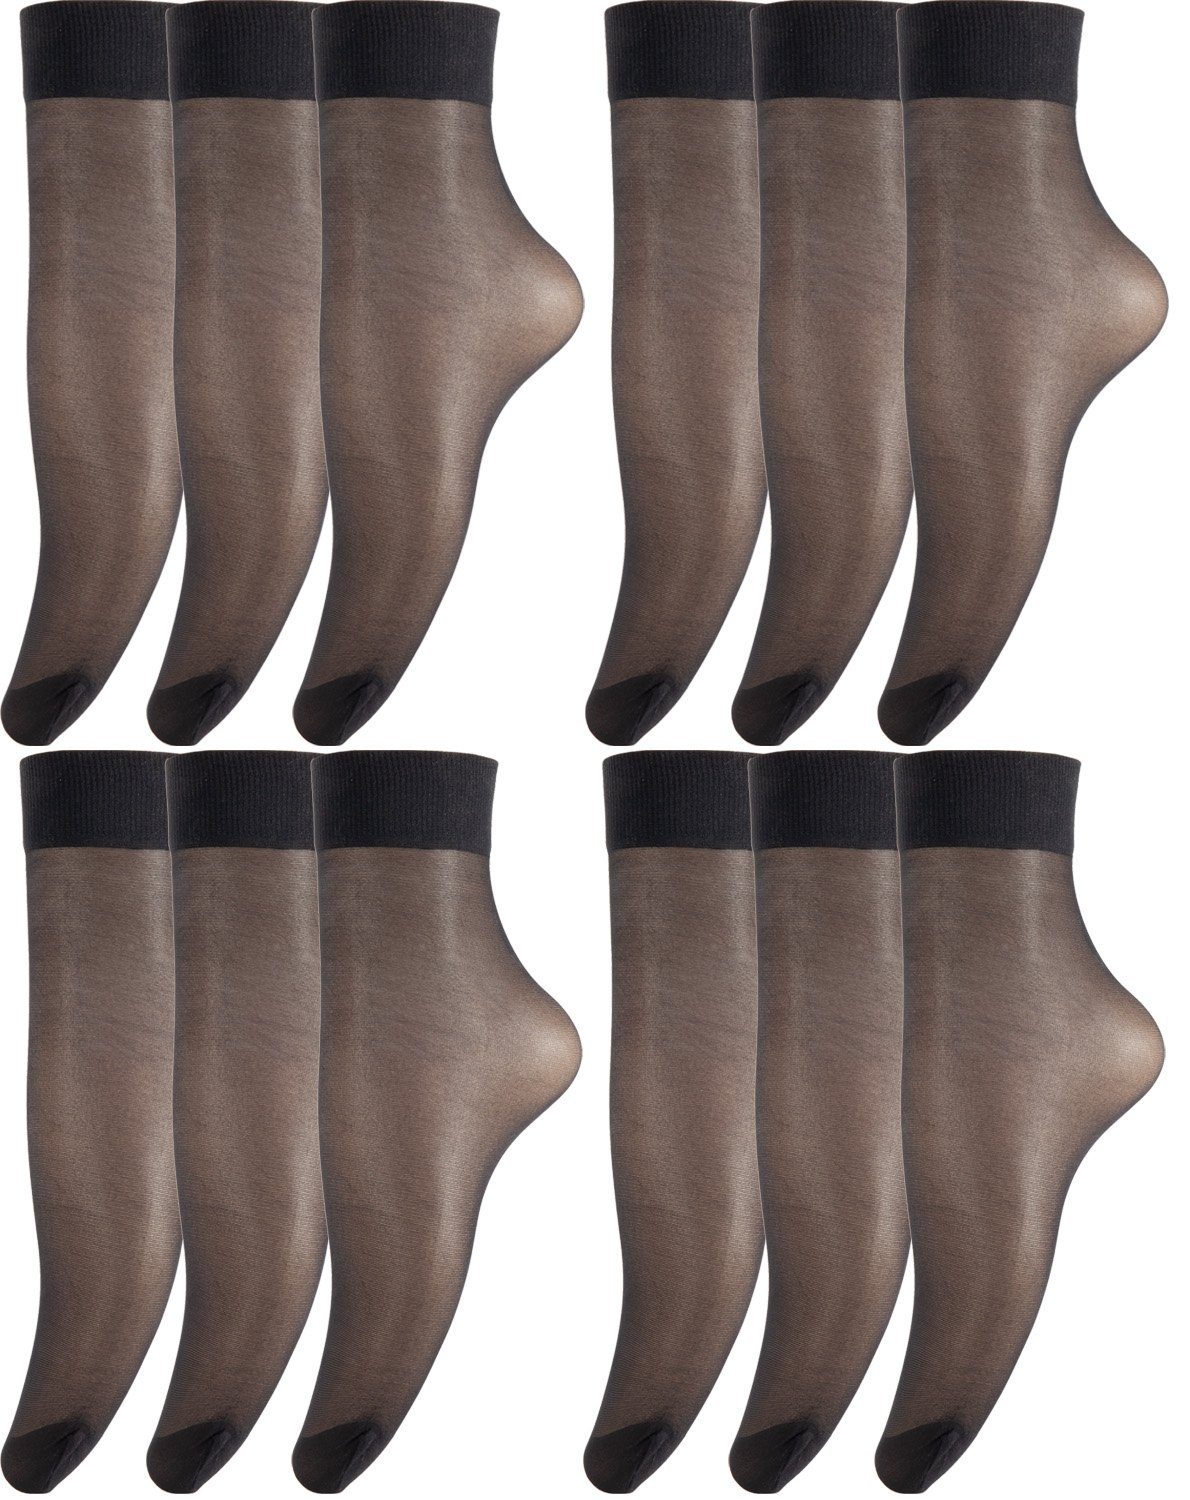 BANANALU Feinsöckchen Feinsocken Nylon Socken feinstrumpfsöckchen Großpackung (24-Paar)